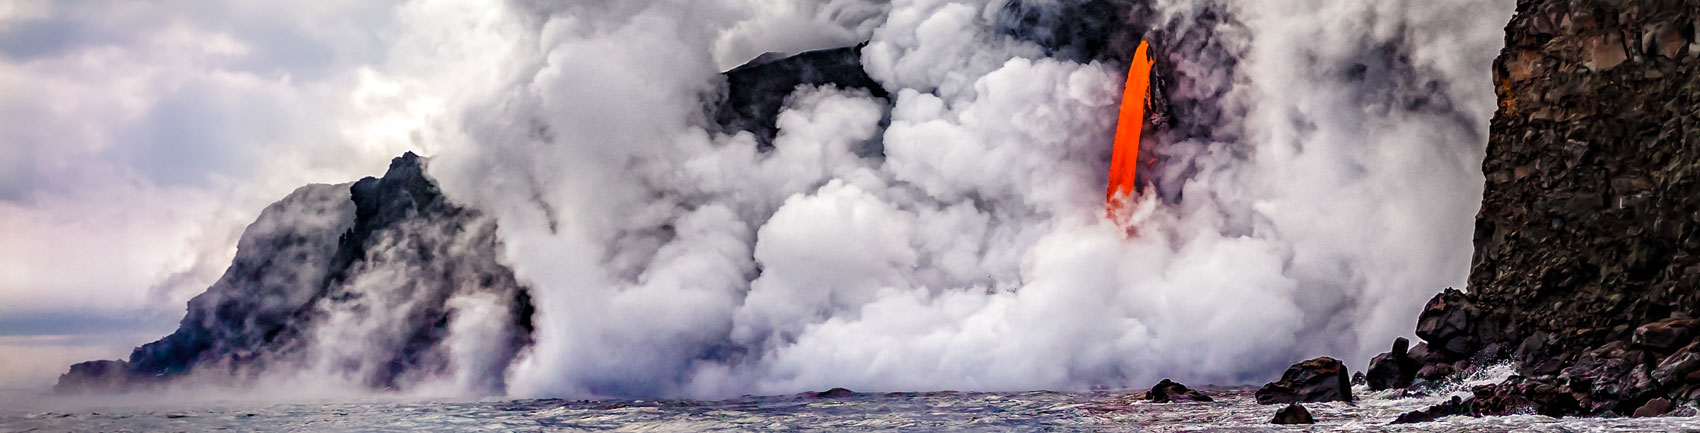 ハワイ火山国立公園の溶岩流